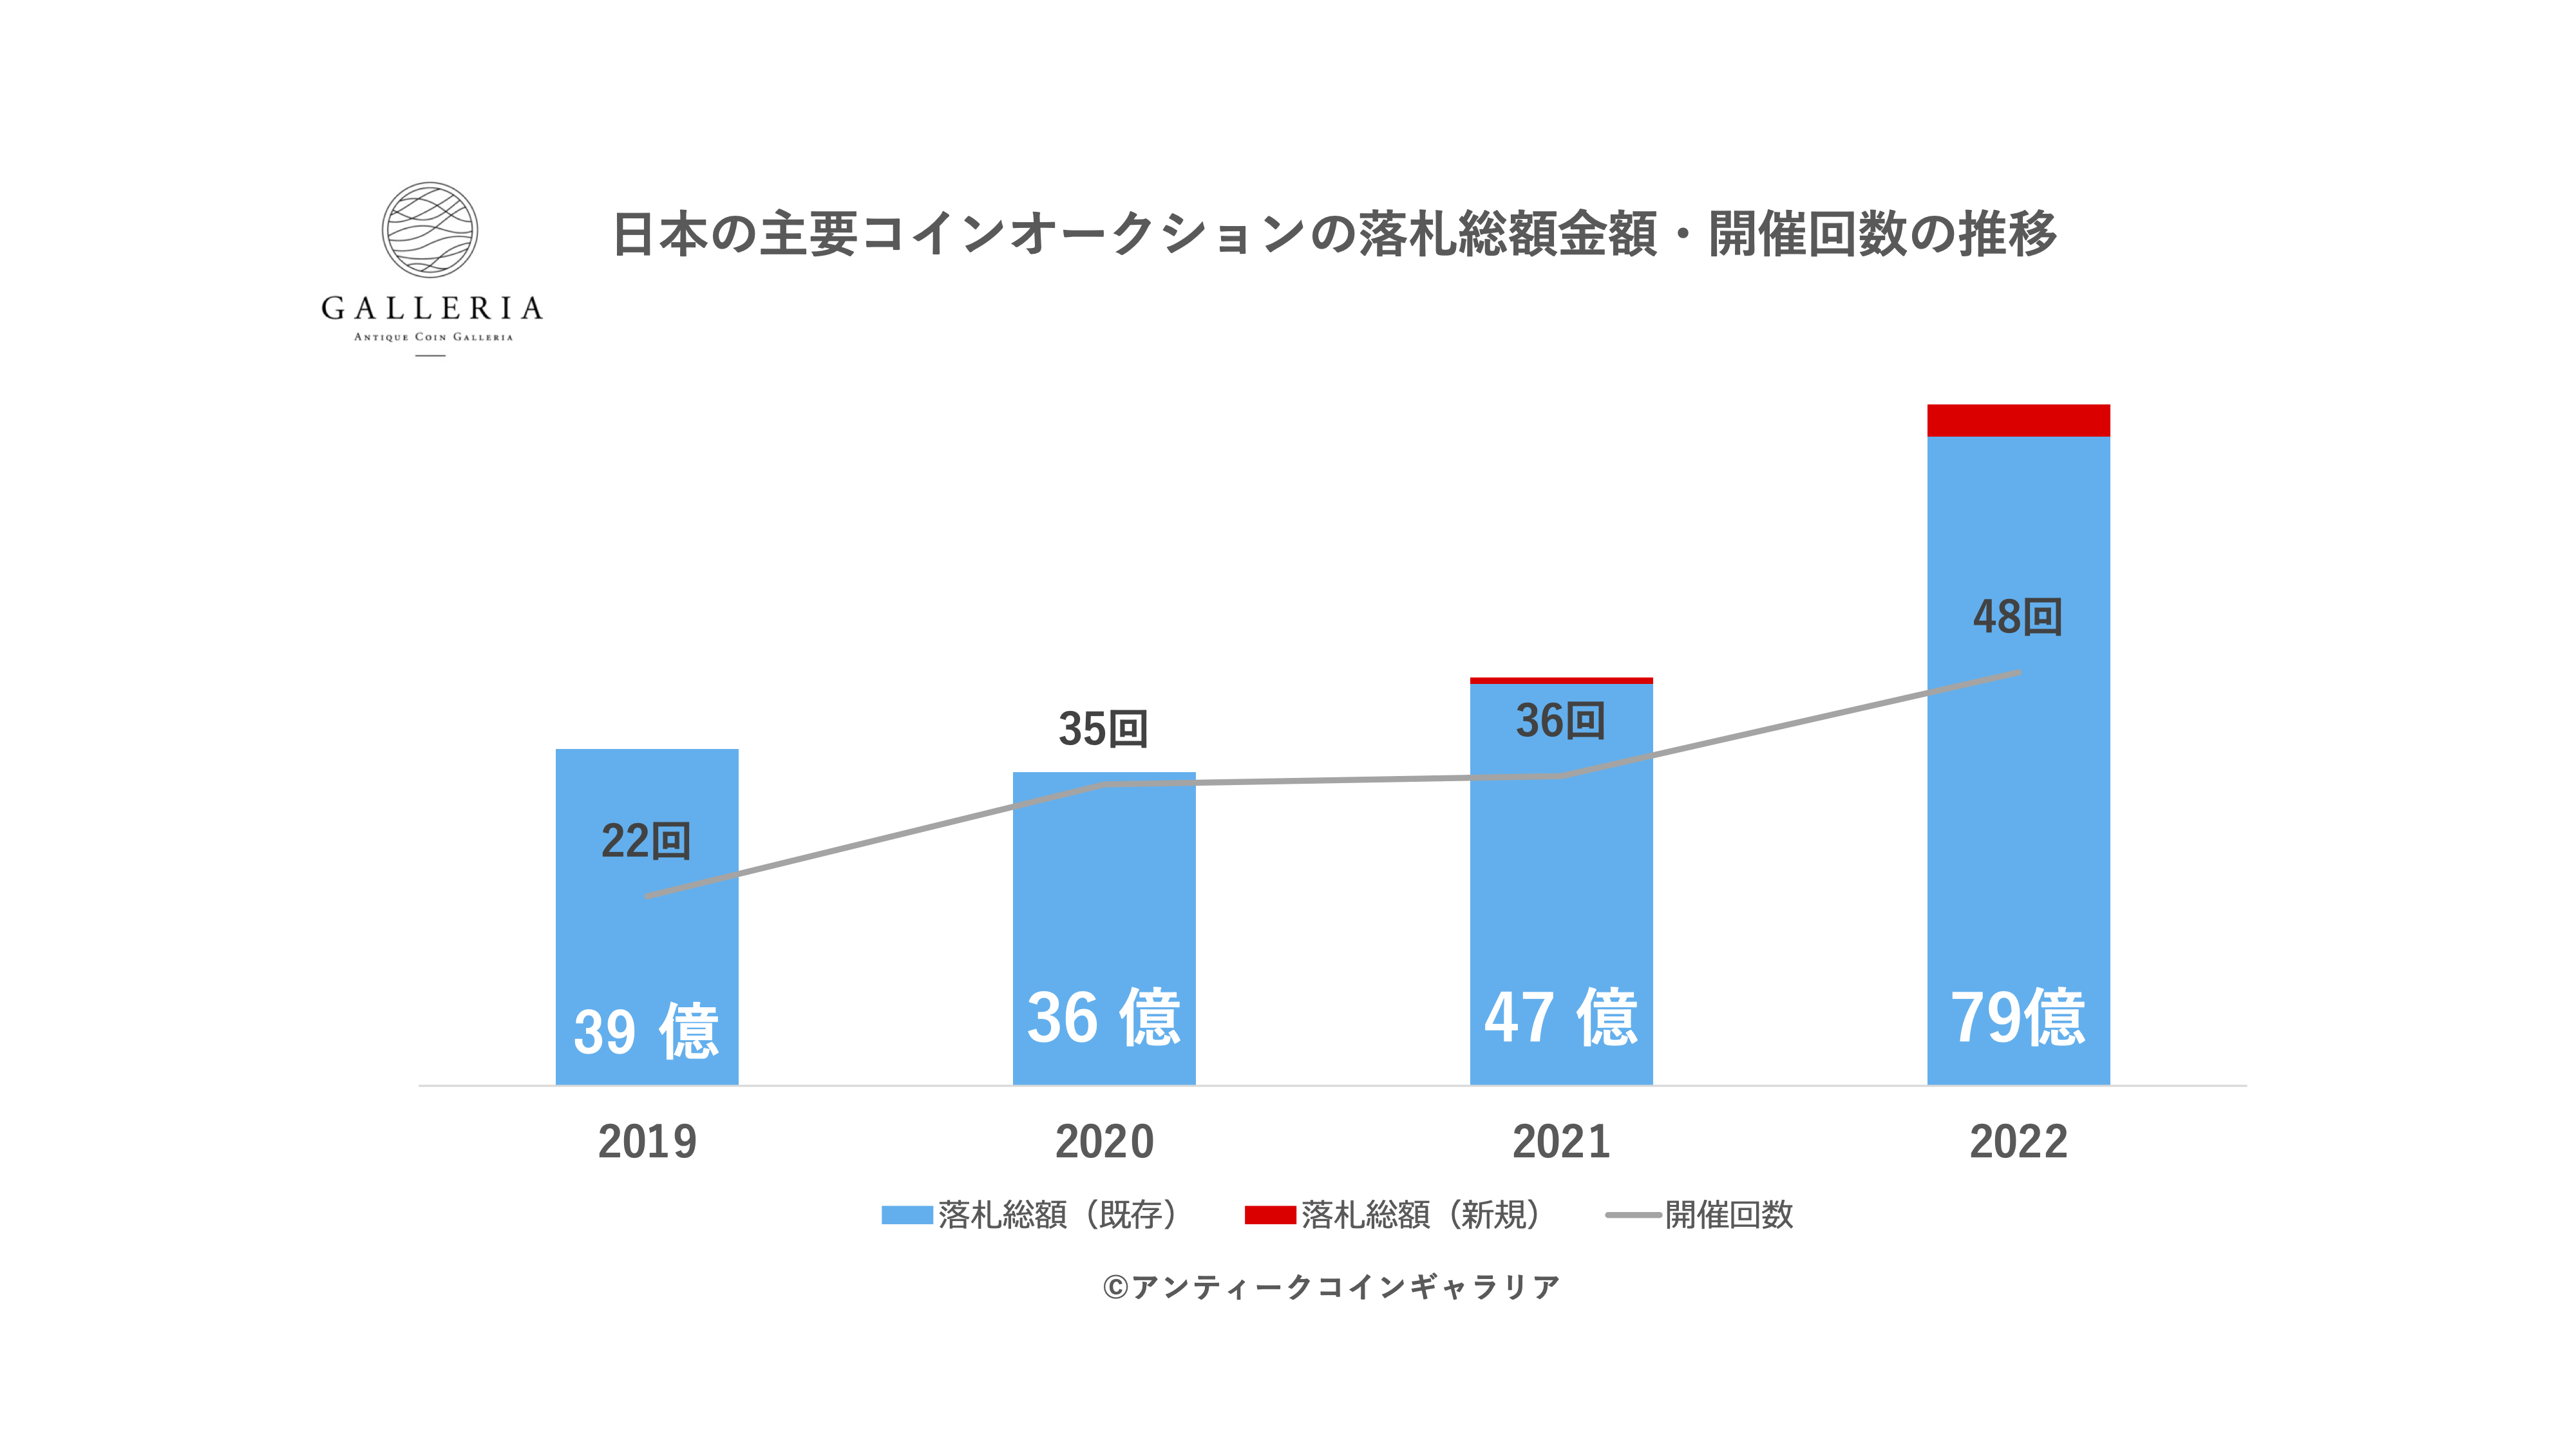 日本の主要コインオークションの落札総額金額・開催回数の推移（新規事業者データ含む）